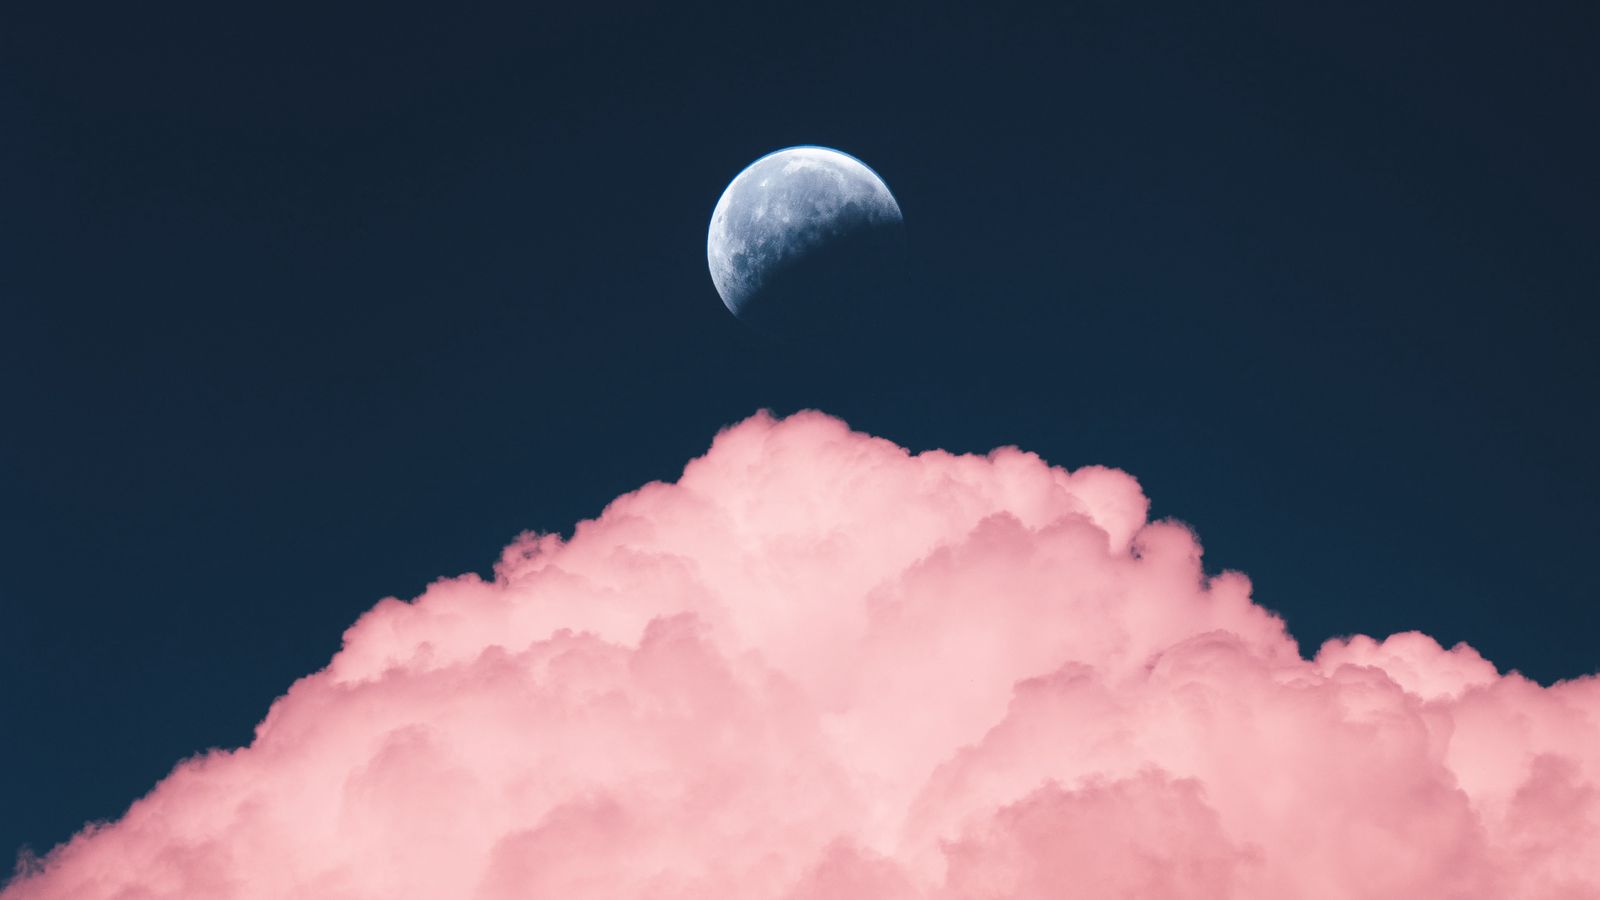 Hãy tận hưởng cảm giác bình yên và thư giãn với hình nền độ phân giải 1600x900 mây, trăng, đêm tràn ngập màu hồng thật dịu dàng. Sắc màu này sẽ giúp tràn đầy sự lãng mạn cho không gian làm việc của bạn. Xem ngay hình ảnh để thưởng thức sự tuyệt vời này.